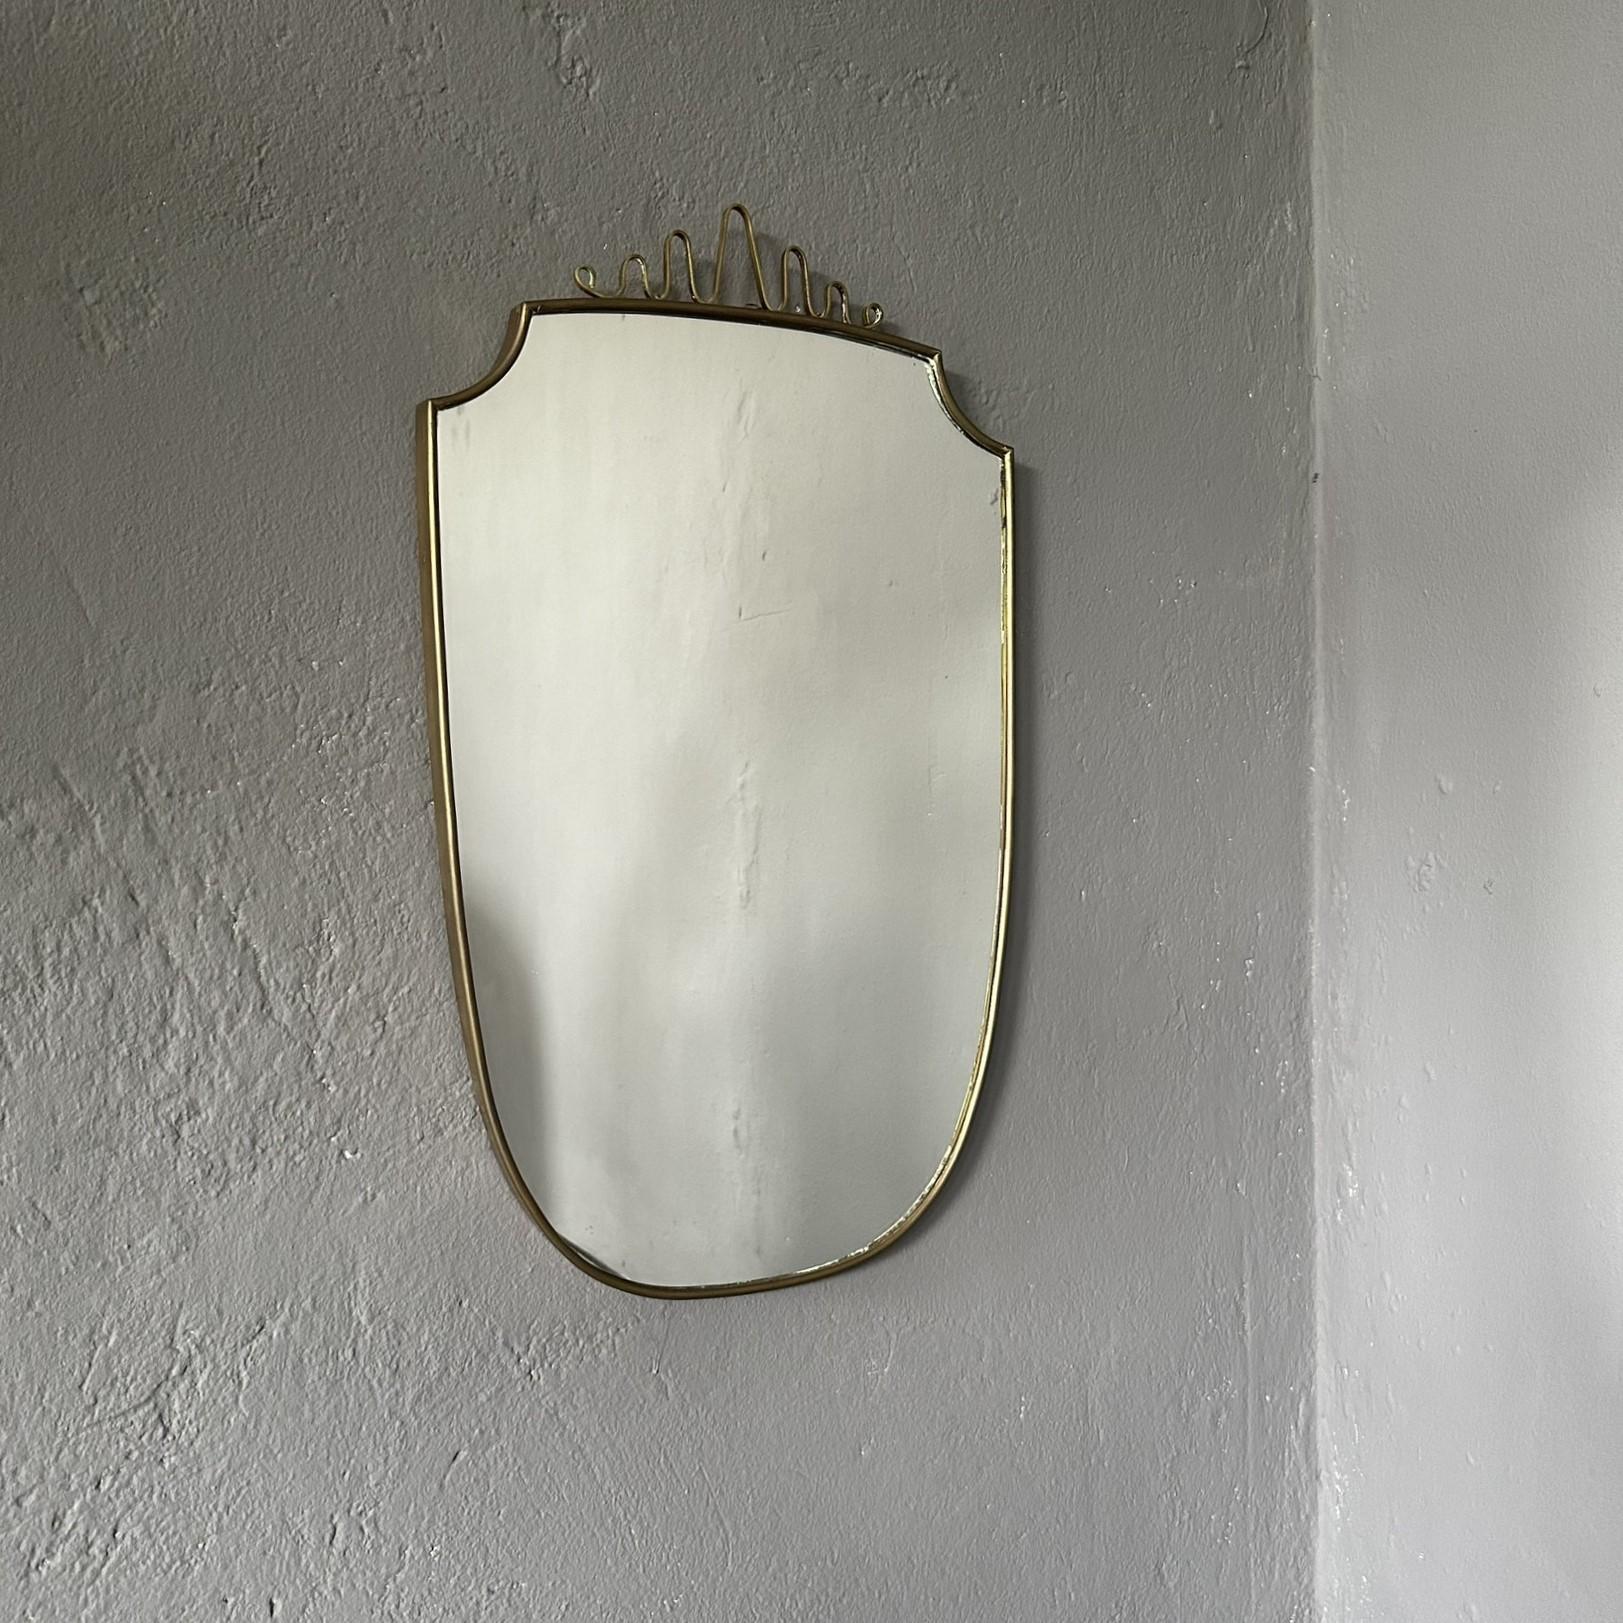 Moderner italienischer Wandspiegel aus der Jahrhundertmitte, 1950, mit Messingrahmen und -verzierung.

Wandspiegel aus den 1950er Jahren, italienische Herstellung, im Stil von Giò Ponti.
Der Spiegel hat einen Messingrahmen mit Verzierung auf der